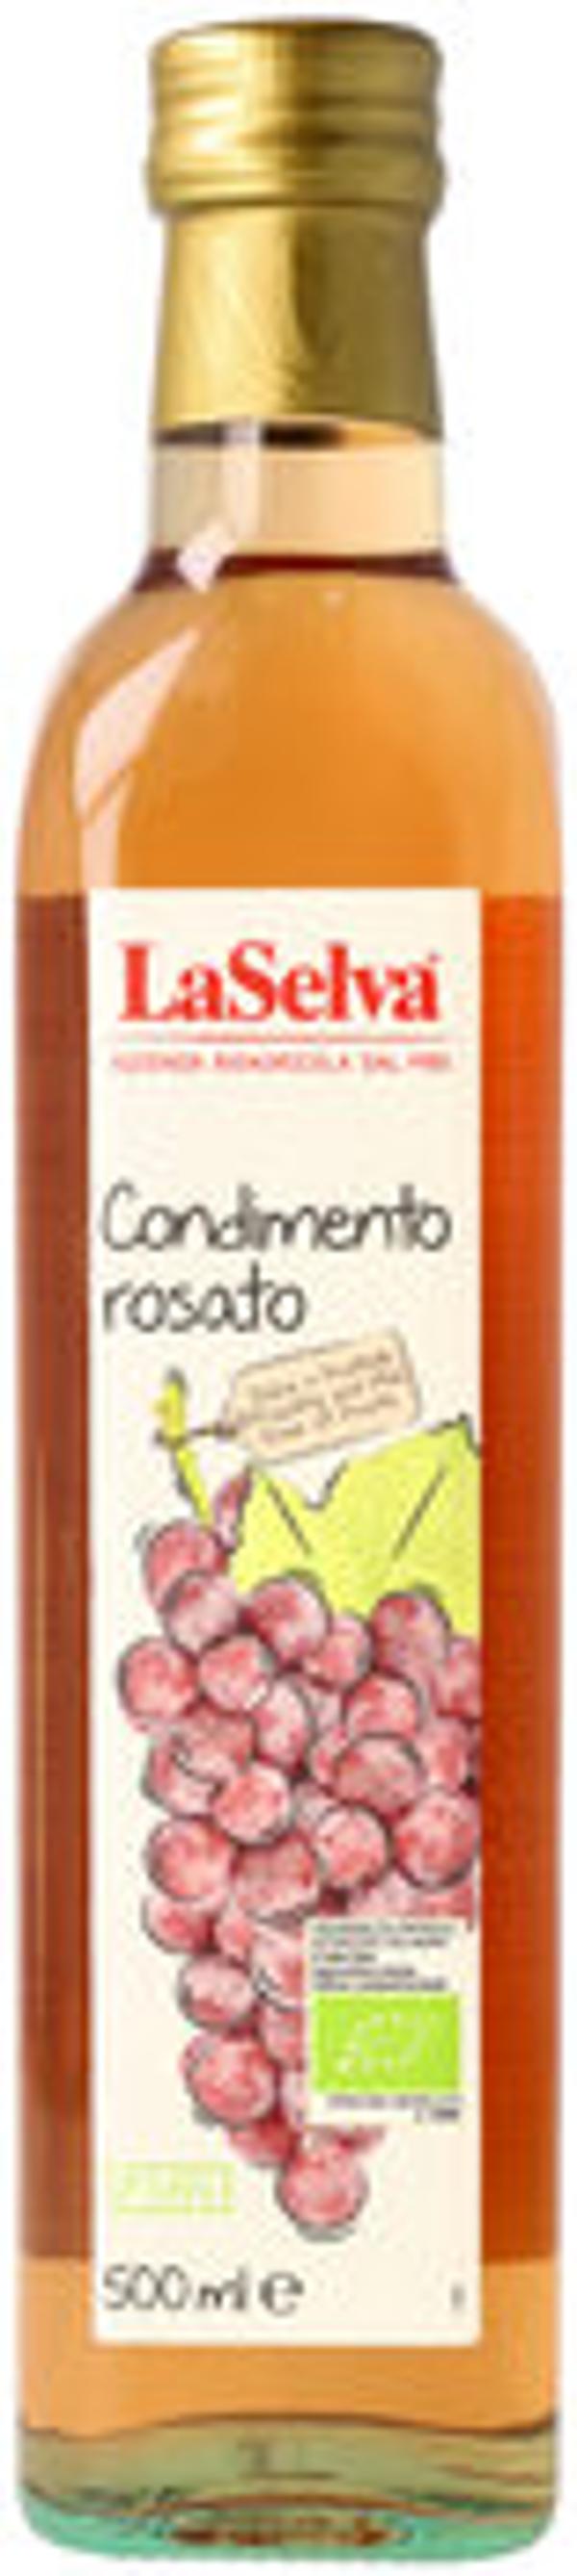 Produktfoto zu Weinessig Condimento Rosato 500ml